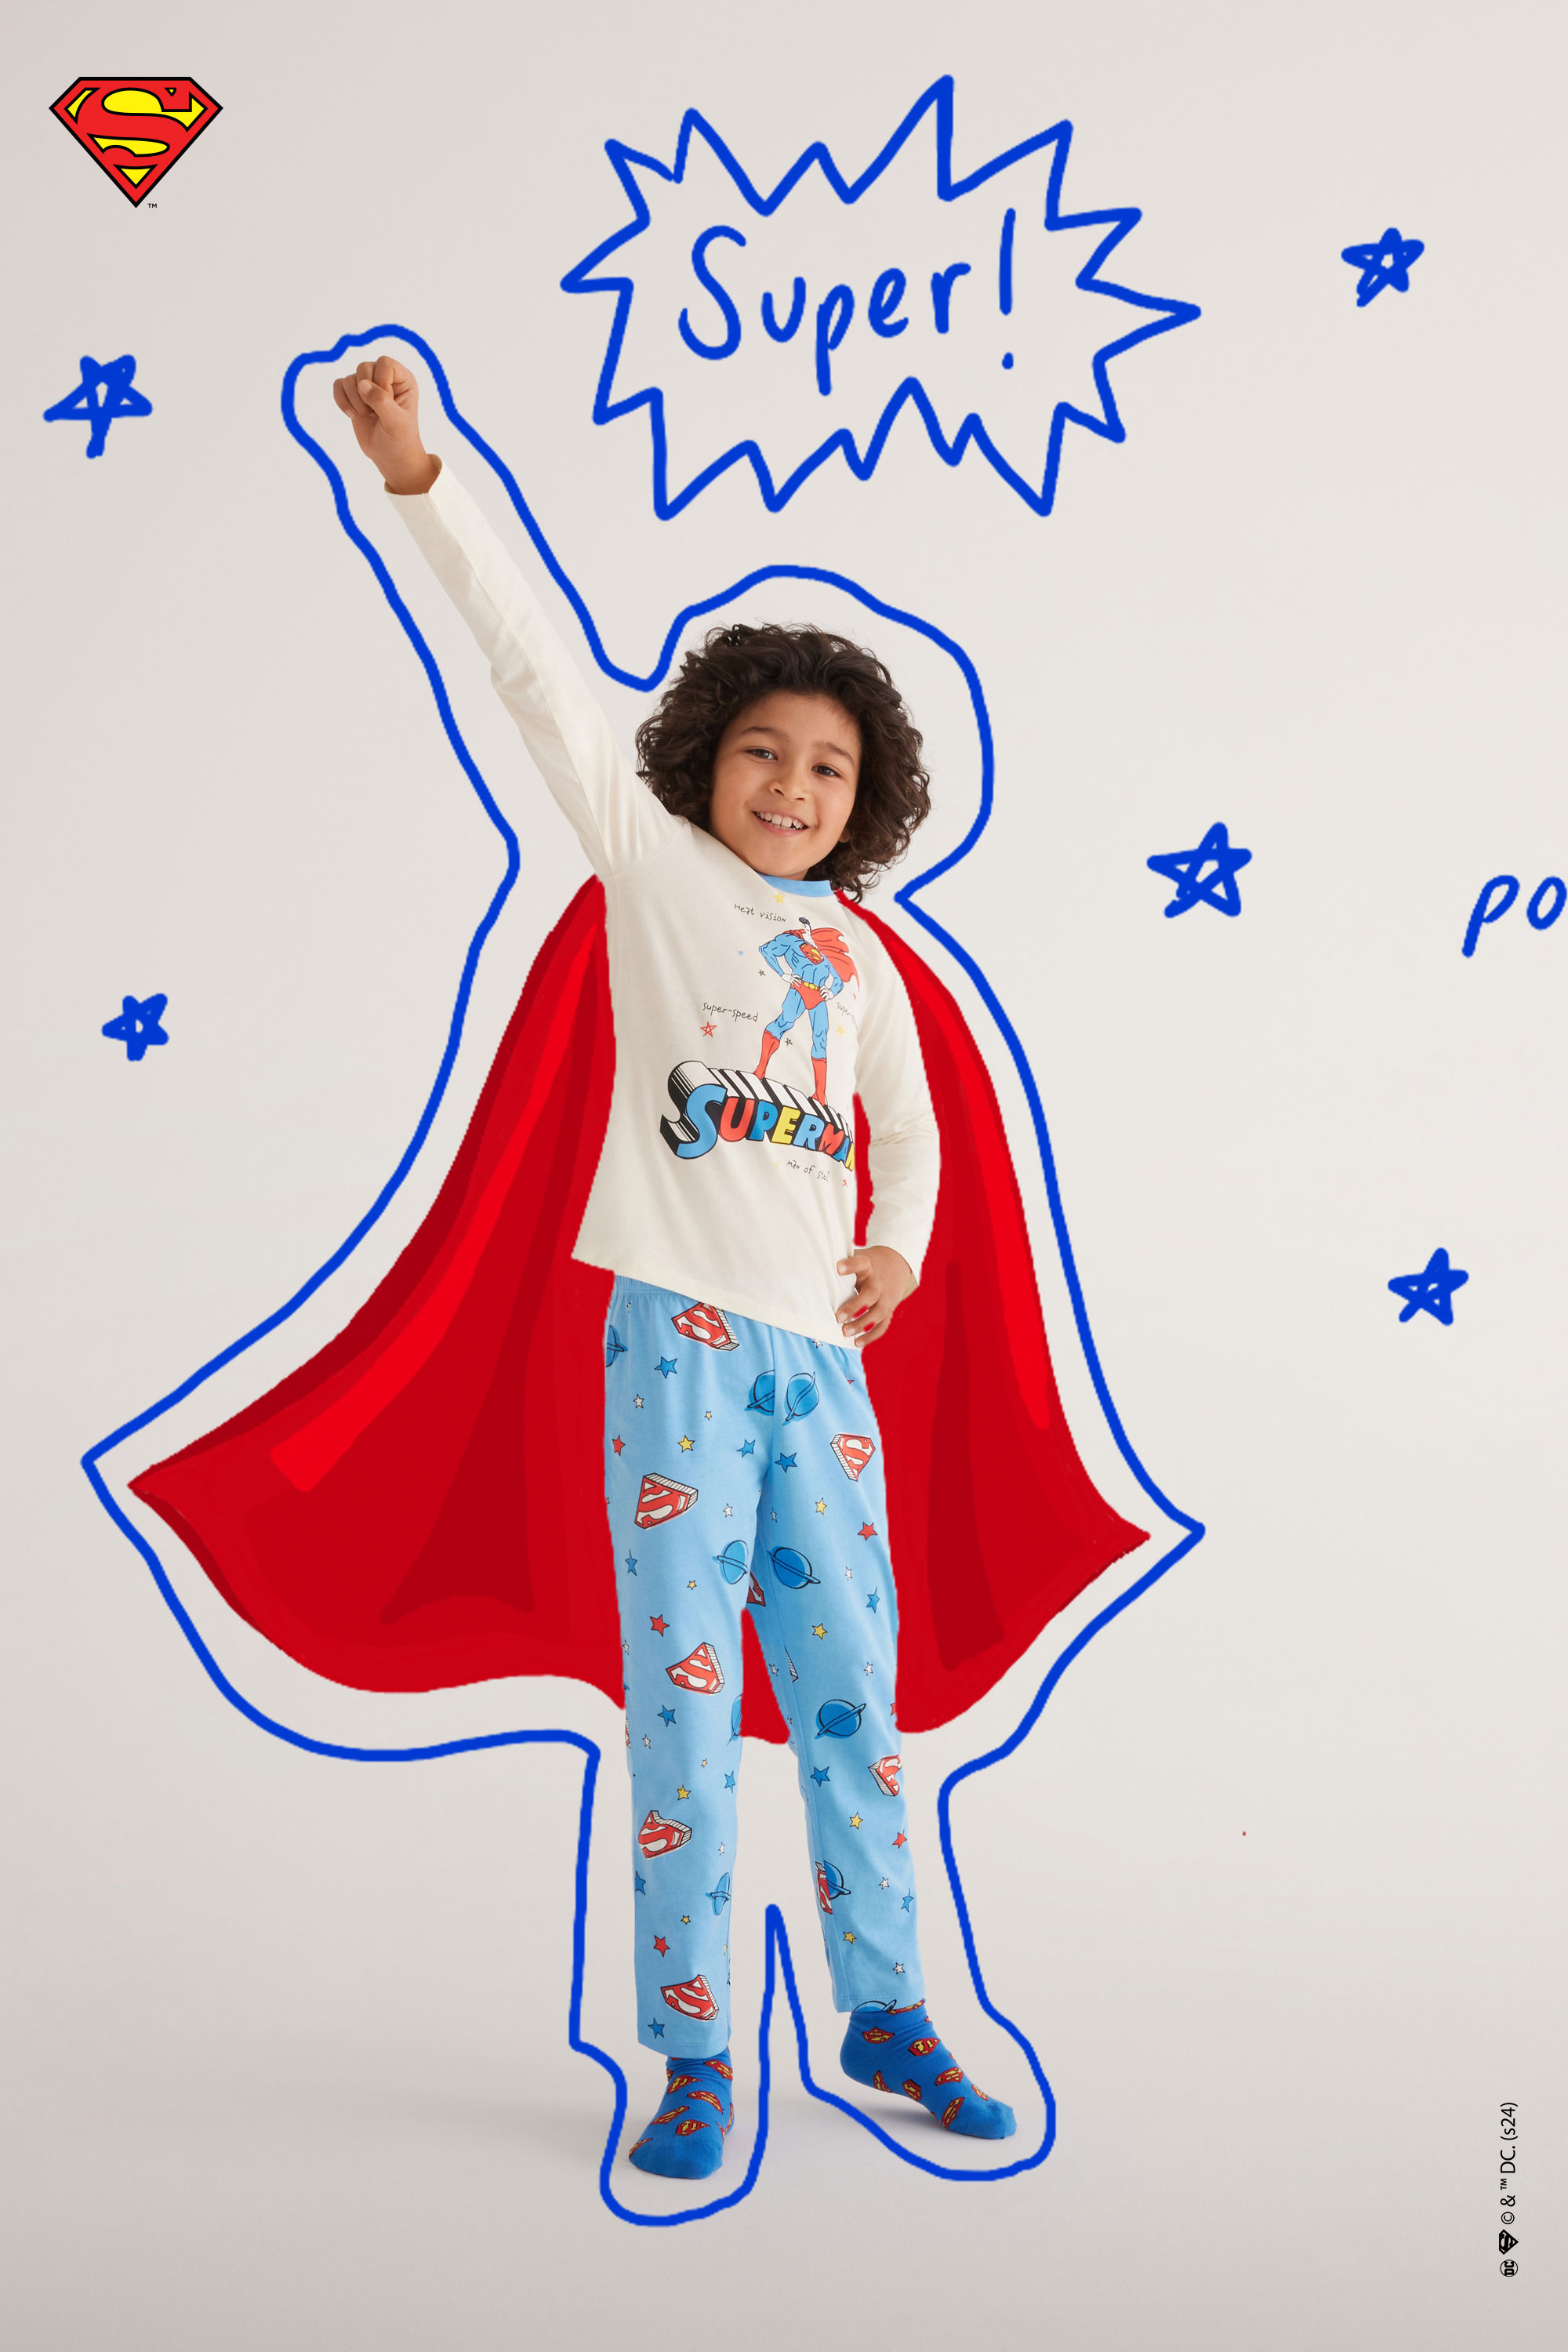 Dlouhé Chlapecké Bavlněné Pyžamo s Potiskem Supermana